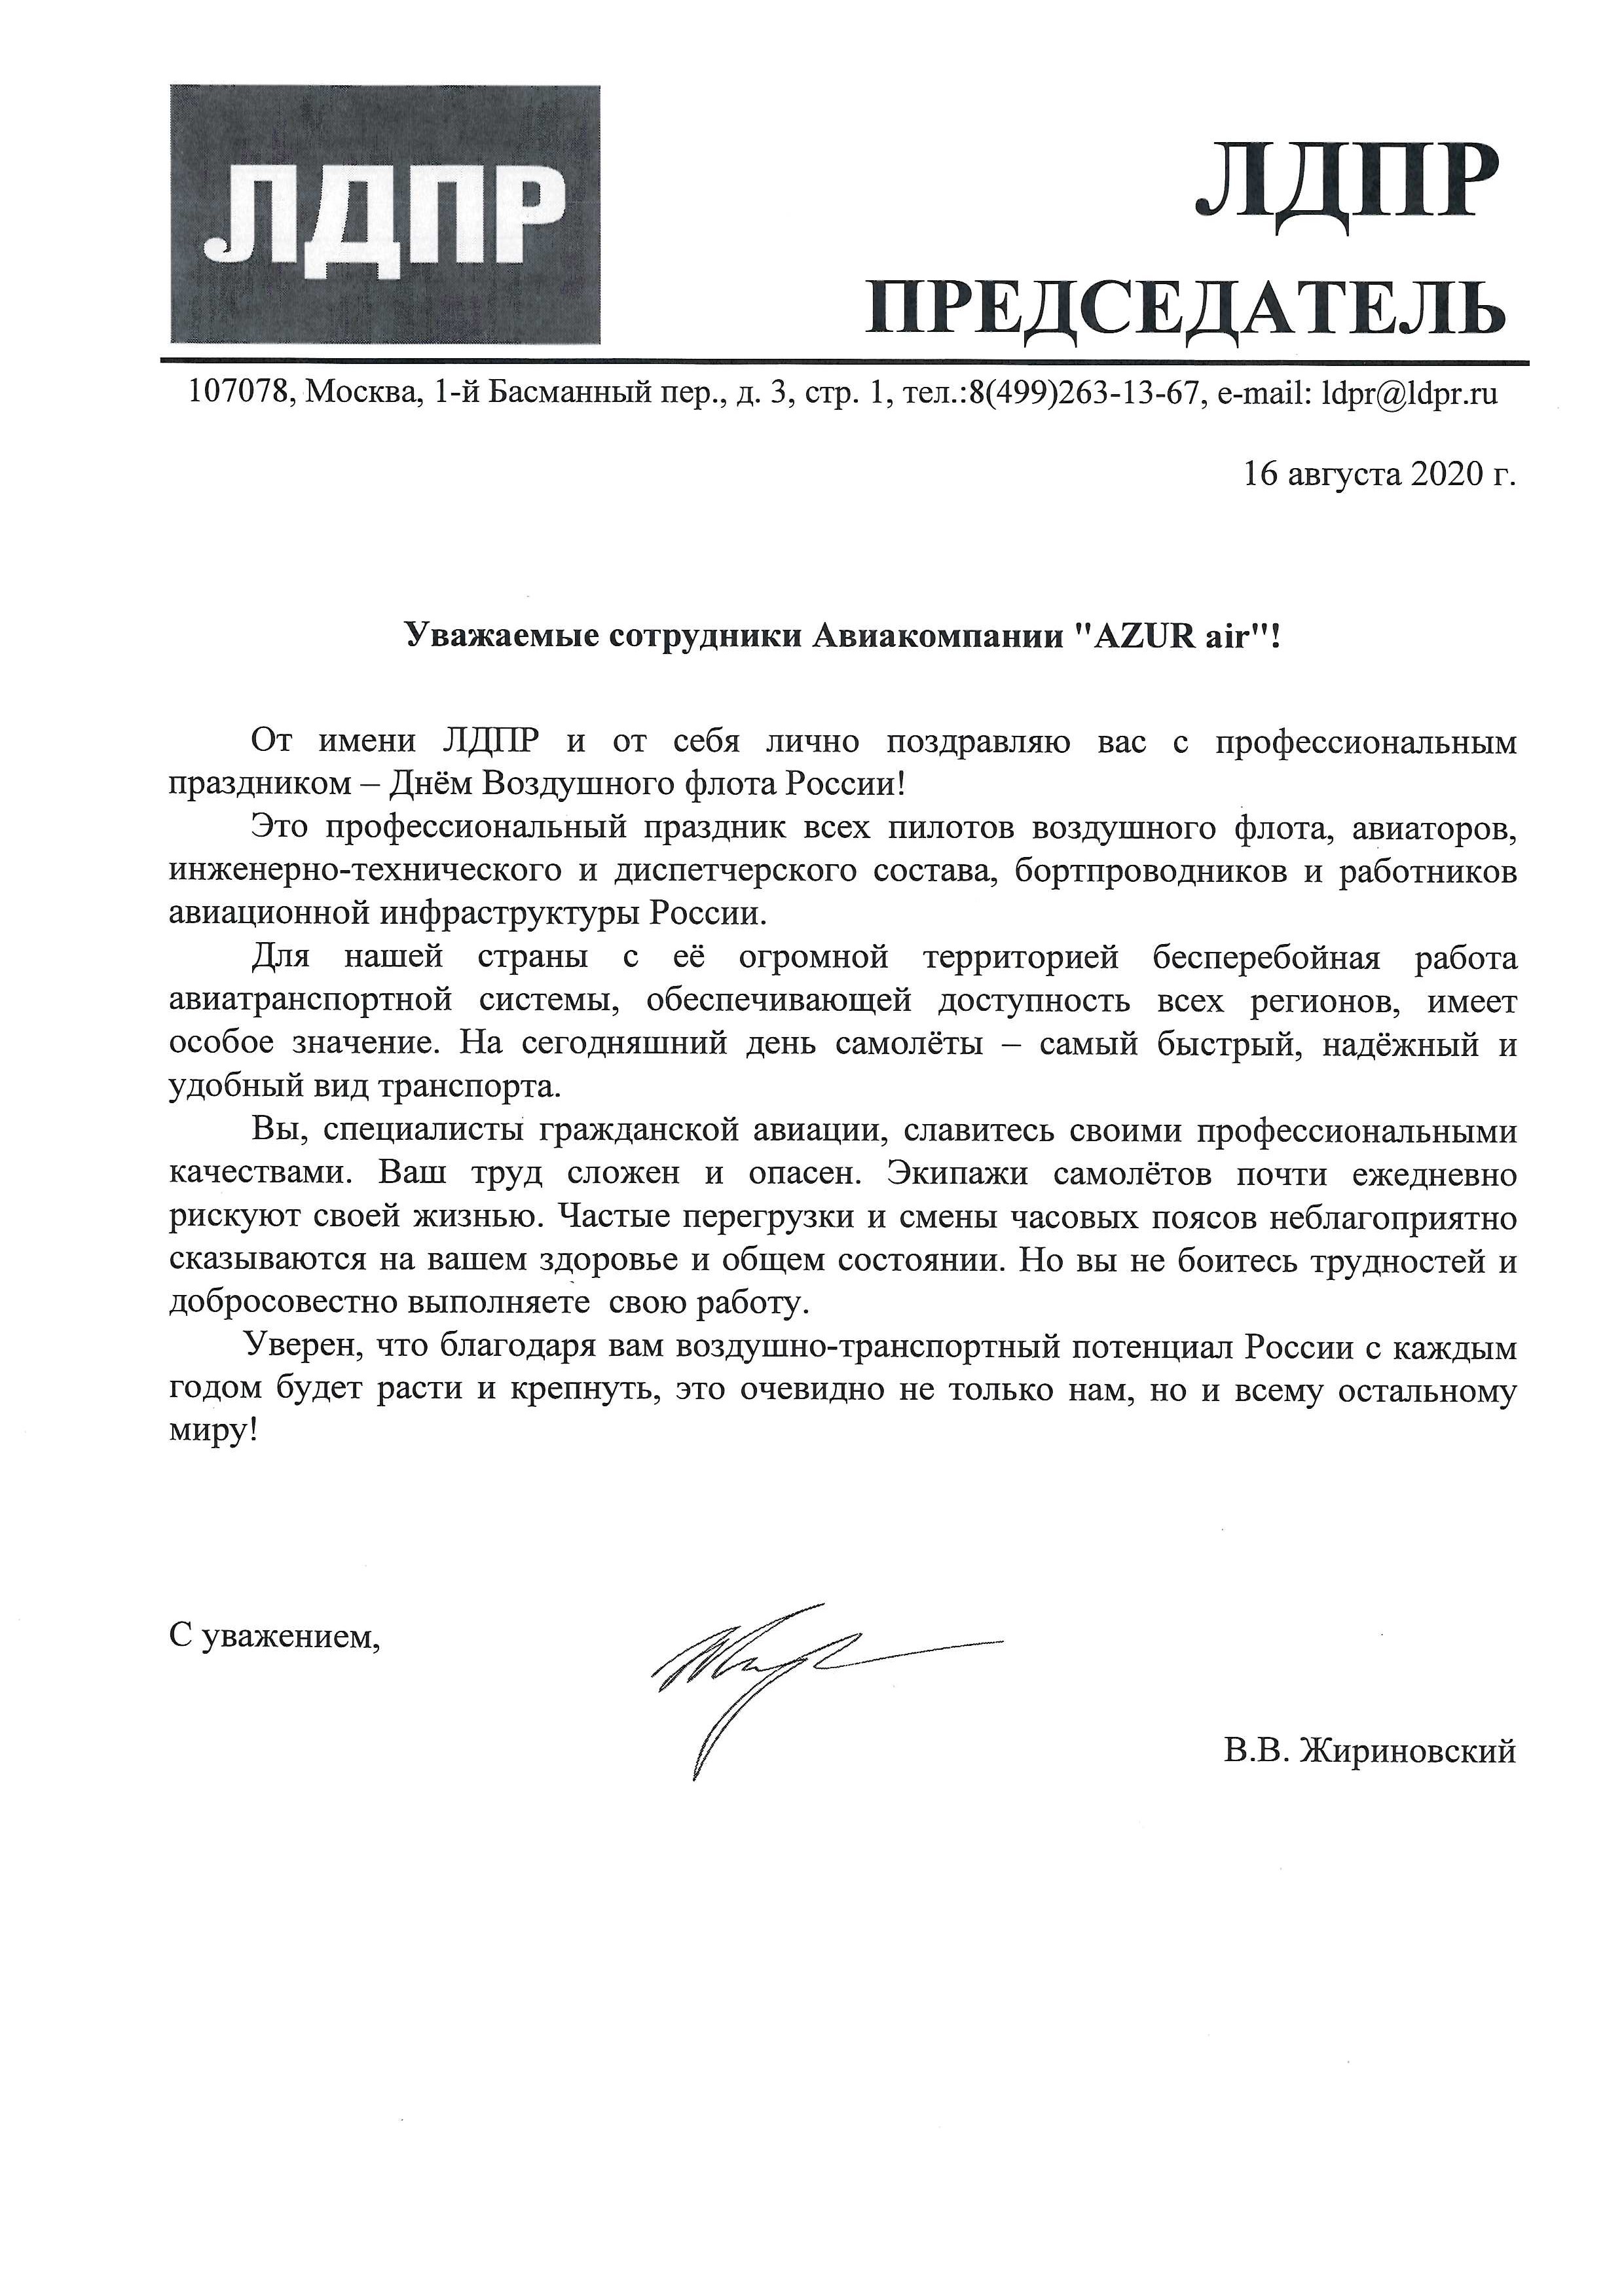 AZUR air, Новости, 17 августа 2020, Поздравление коллектива авиакомпании от ЛДПР